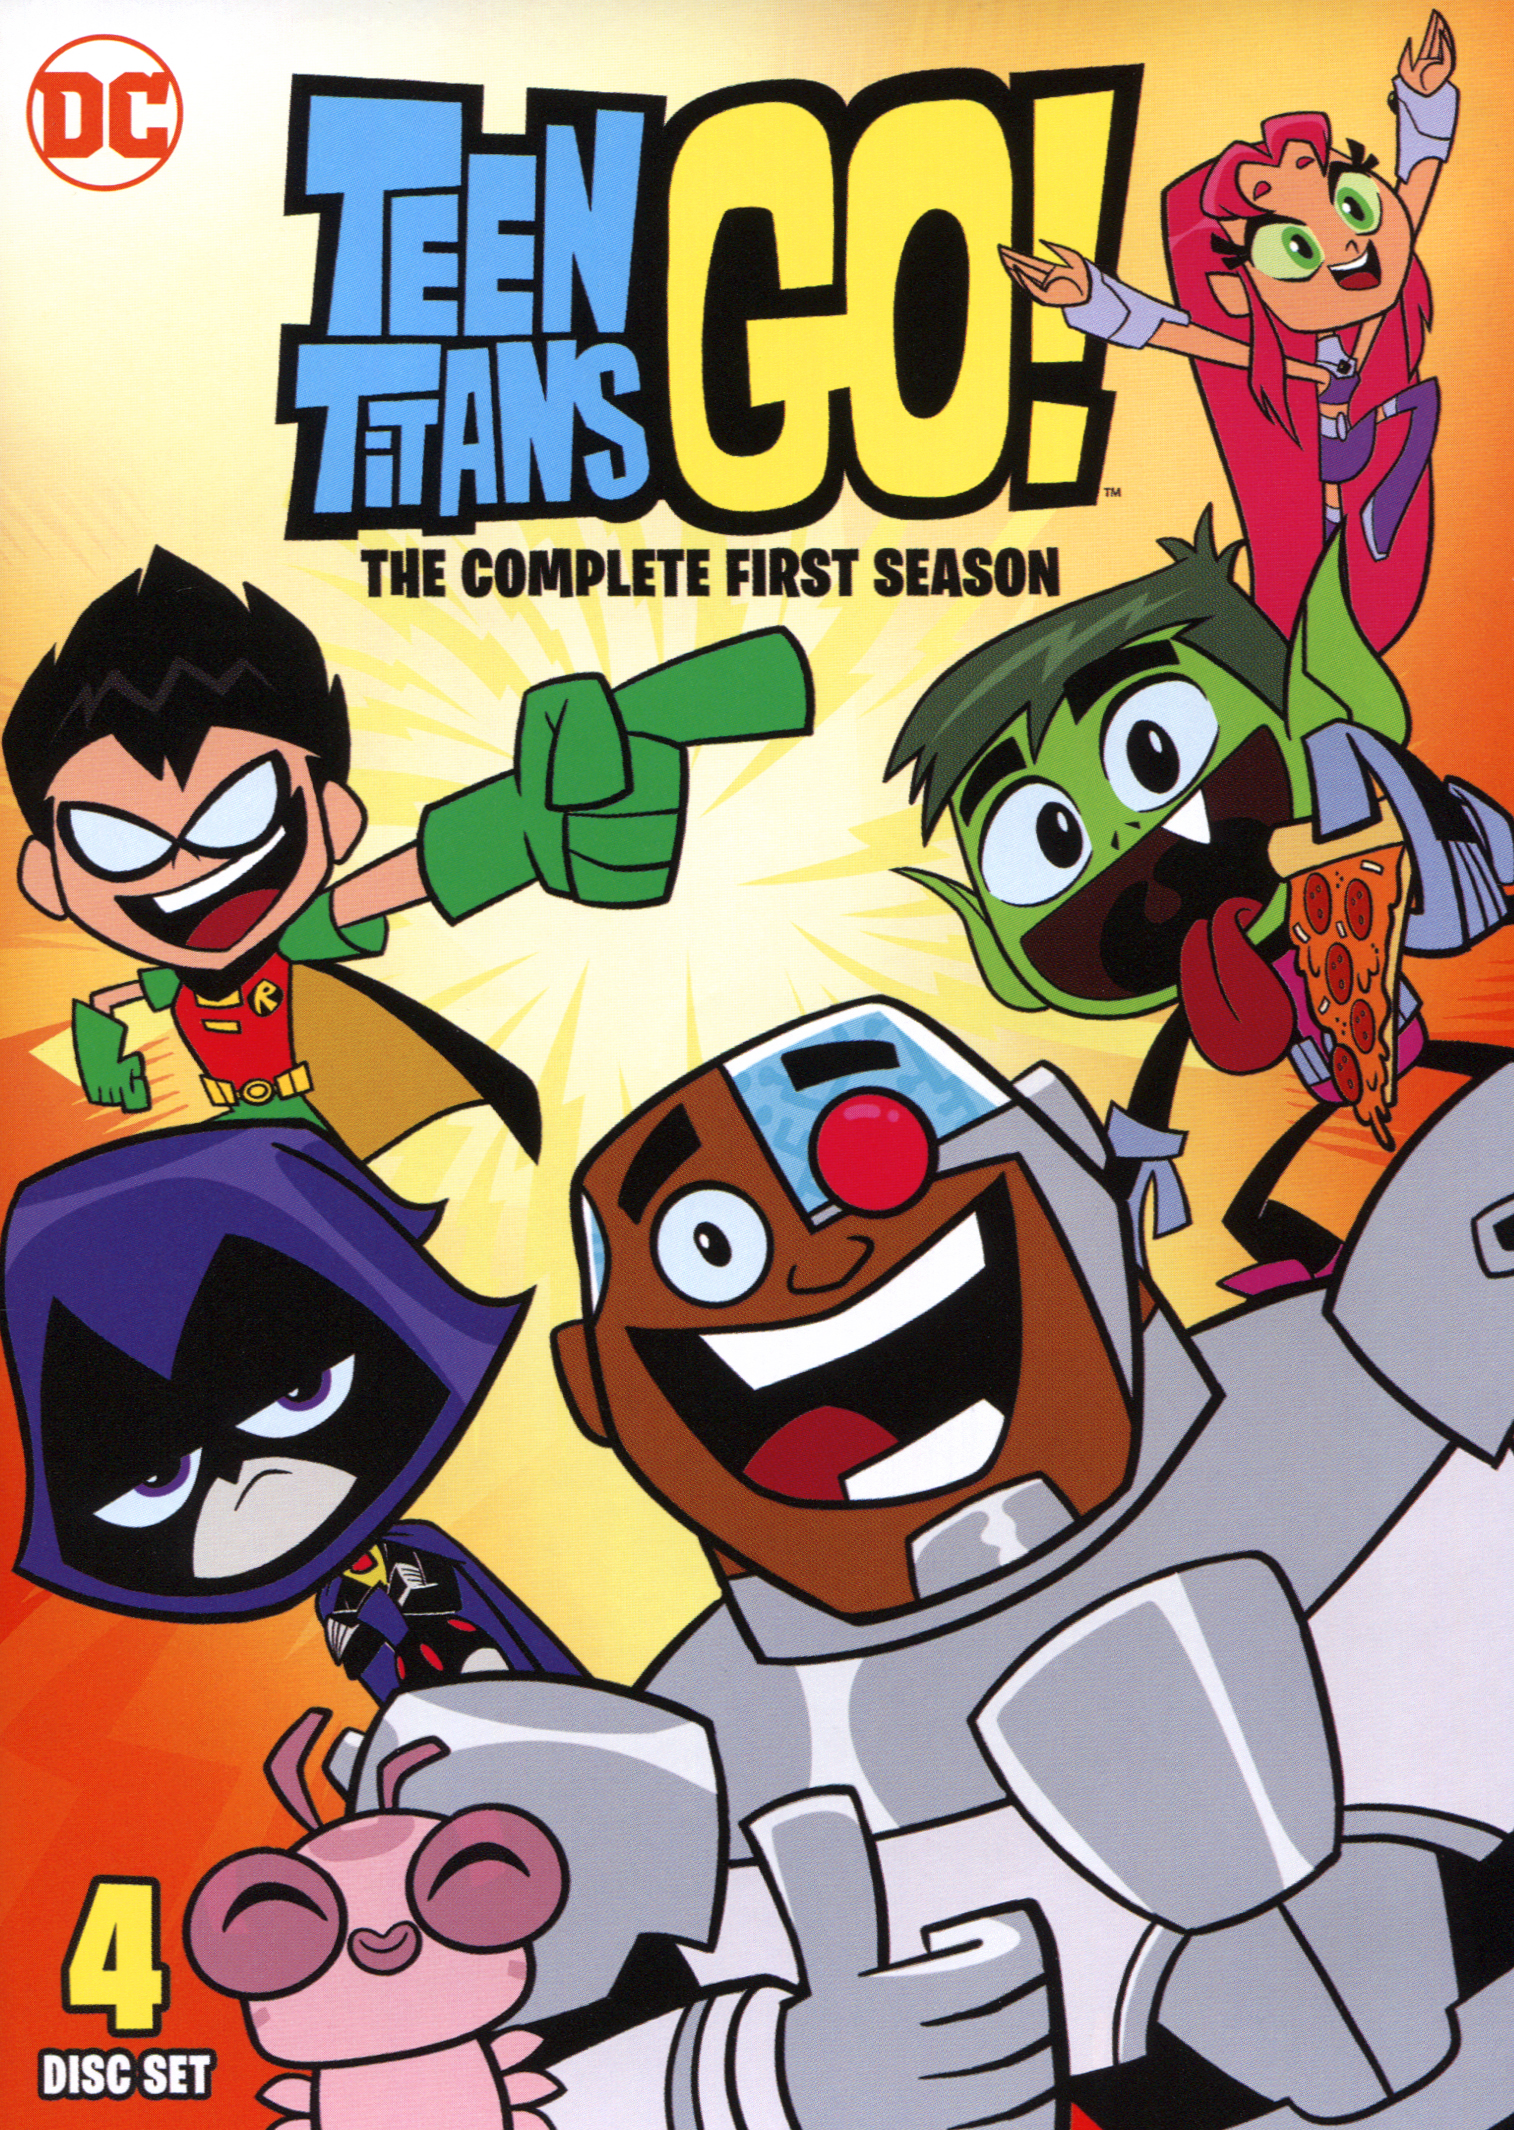 bevel Schaap Voorwaarden Teen Titans Go!: The Complete First Season - Best Buy